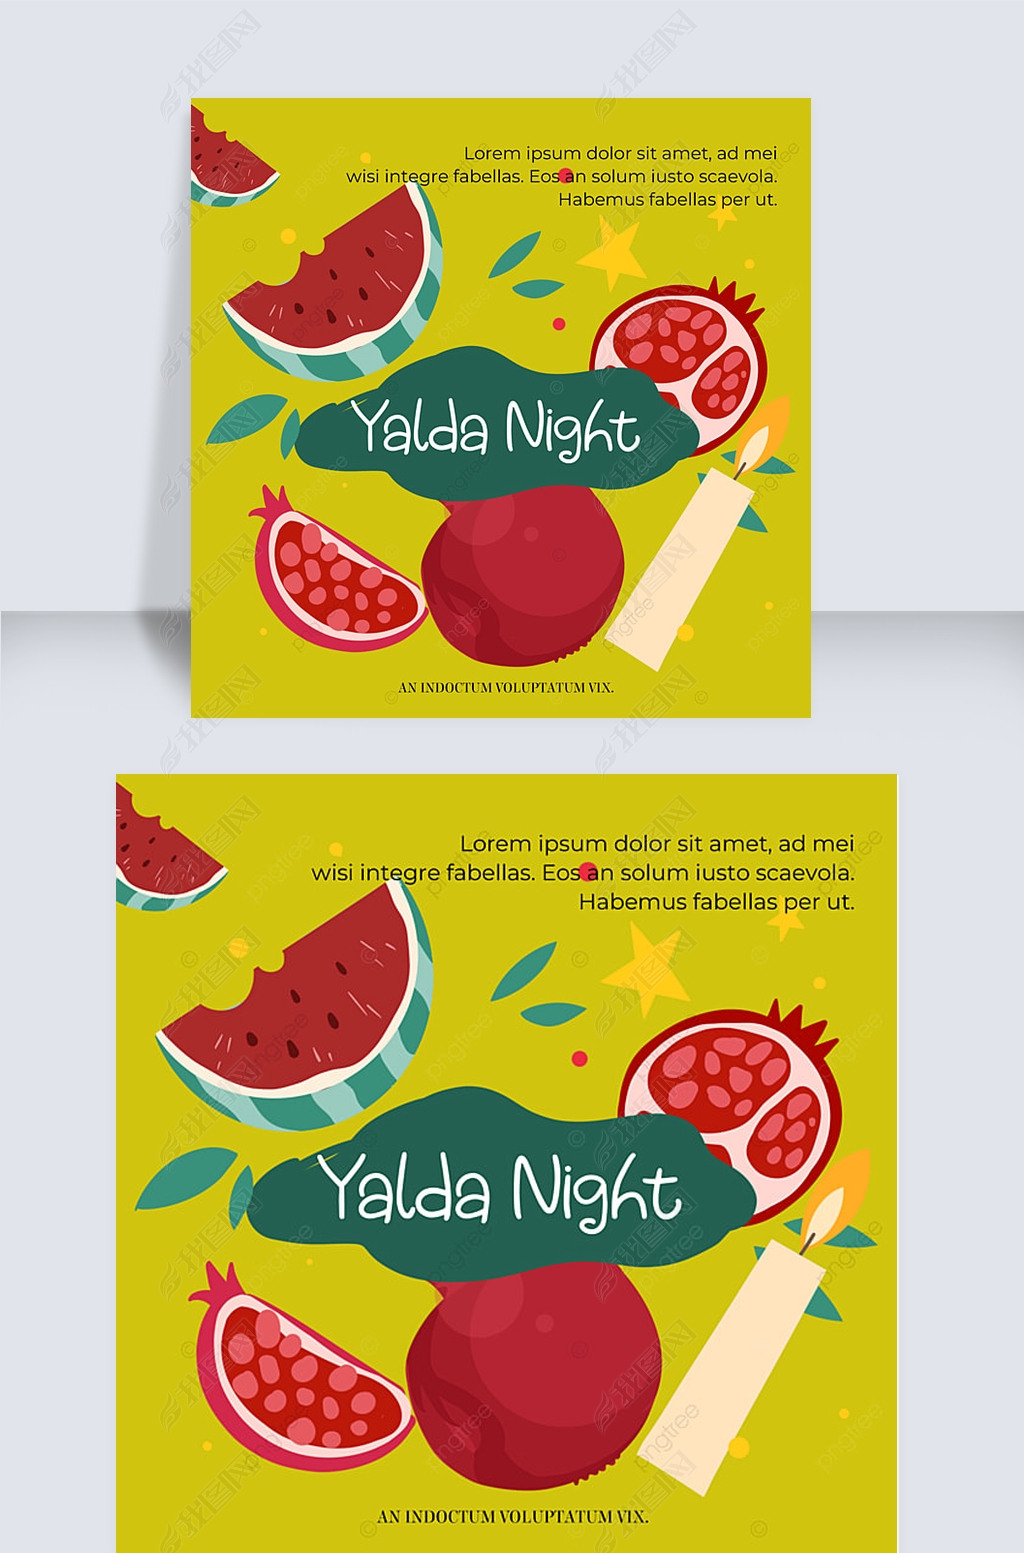 yalda night snsɫ